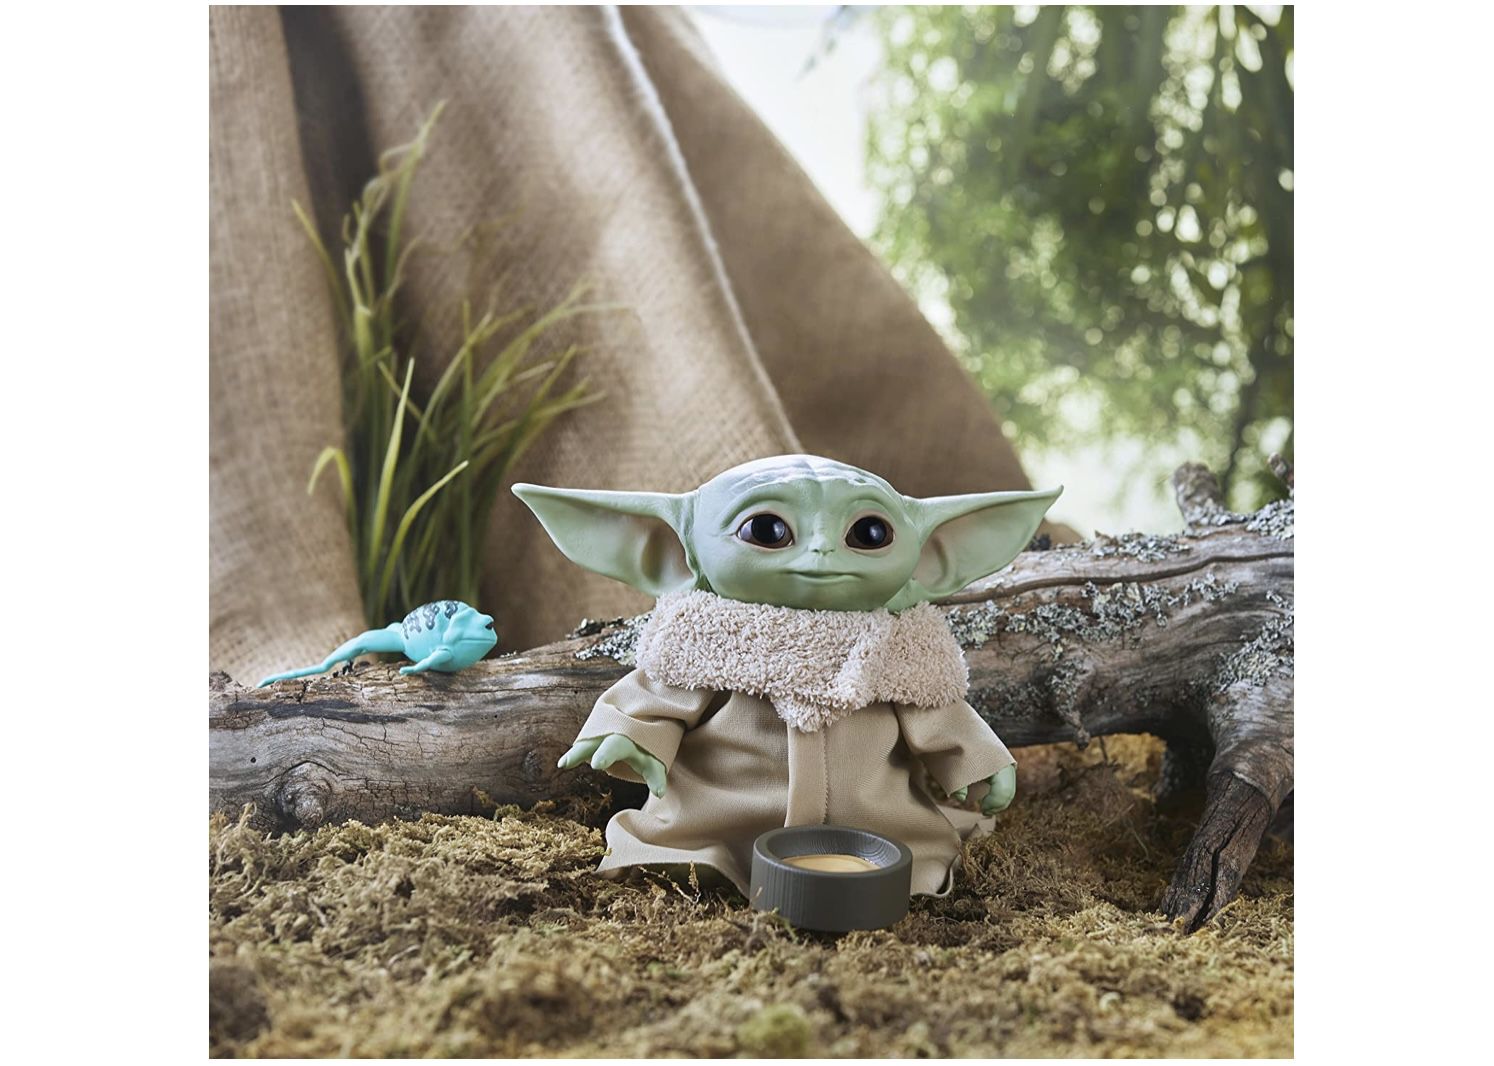 Star Wars The Child sprechende Plüsch Figur für 14,99€ (statt 26€)   Prime